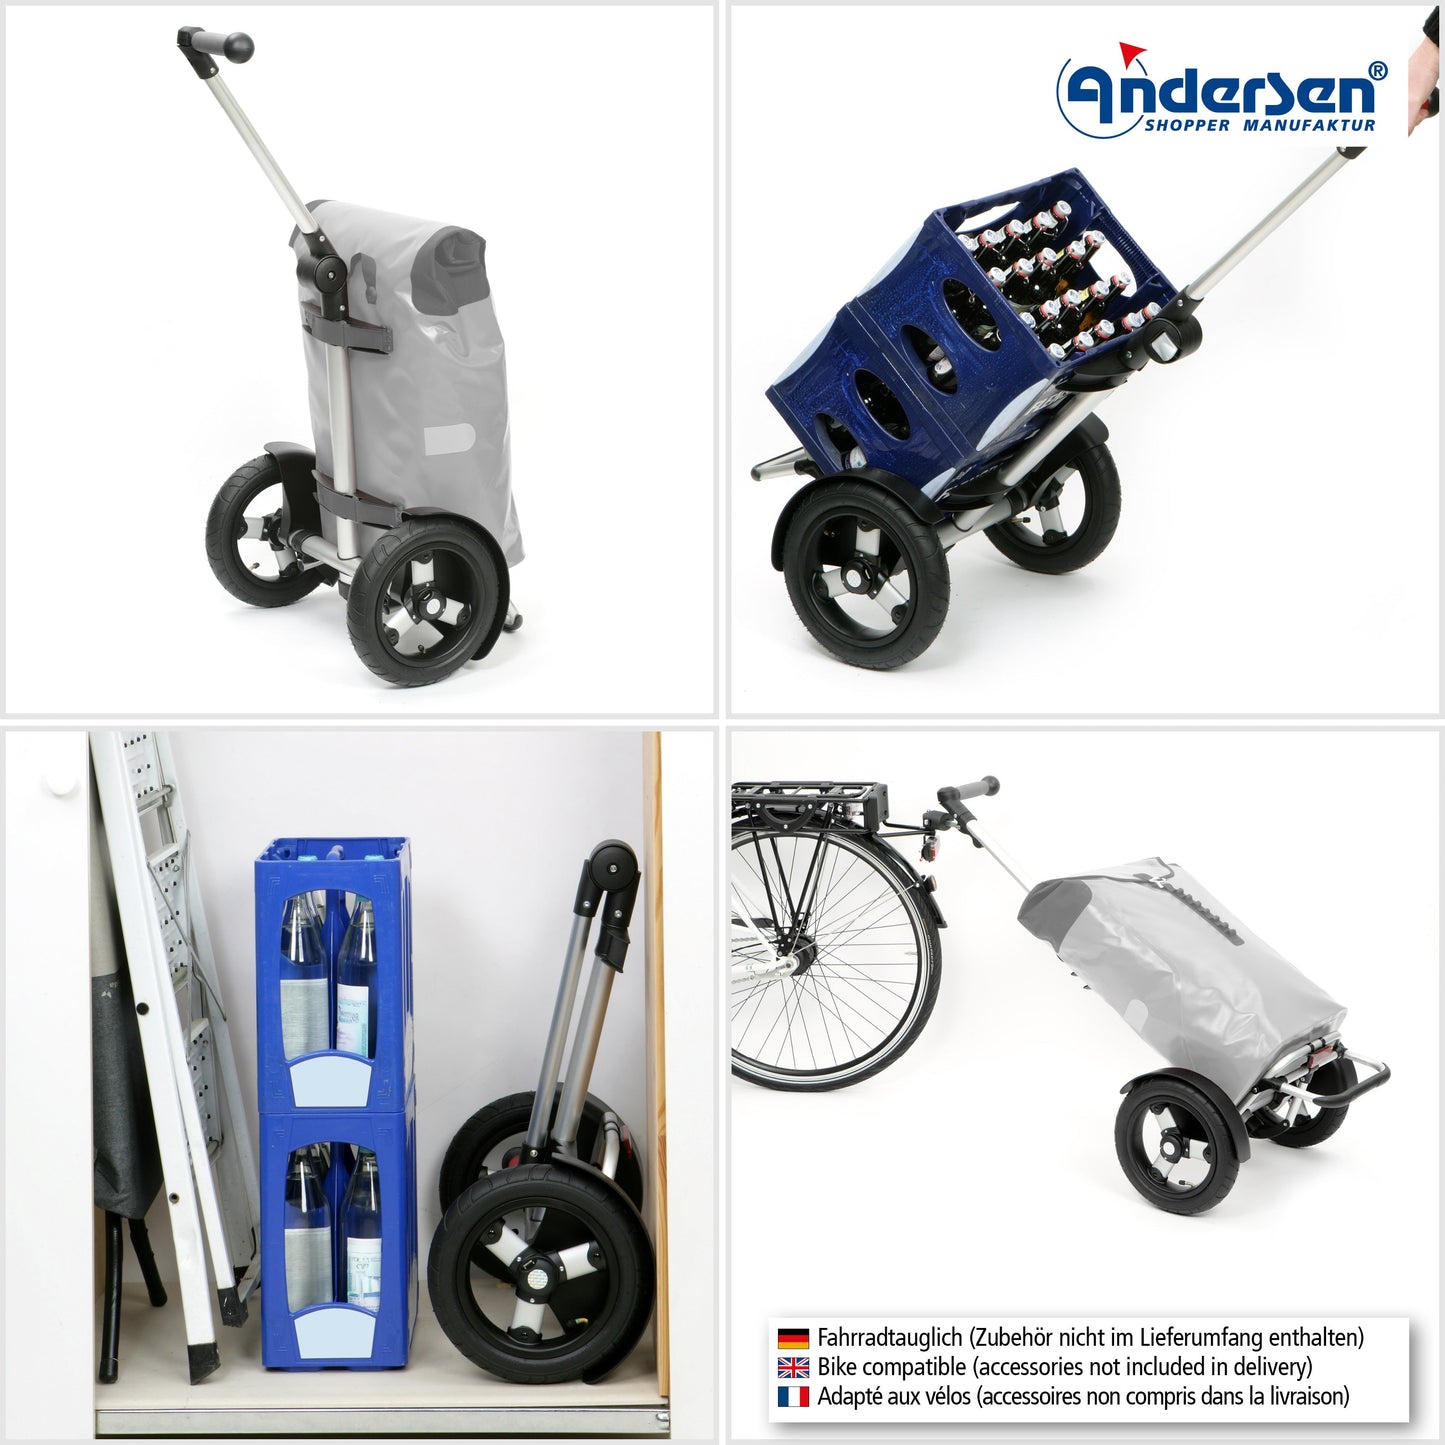 Andersen Shopper Manufaktur-Fahrgestell Tura Shopper (Luftrad 29 cm)-www.shopping-trolley.ch-bild4